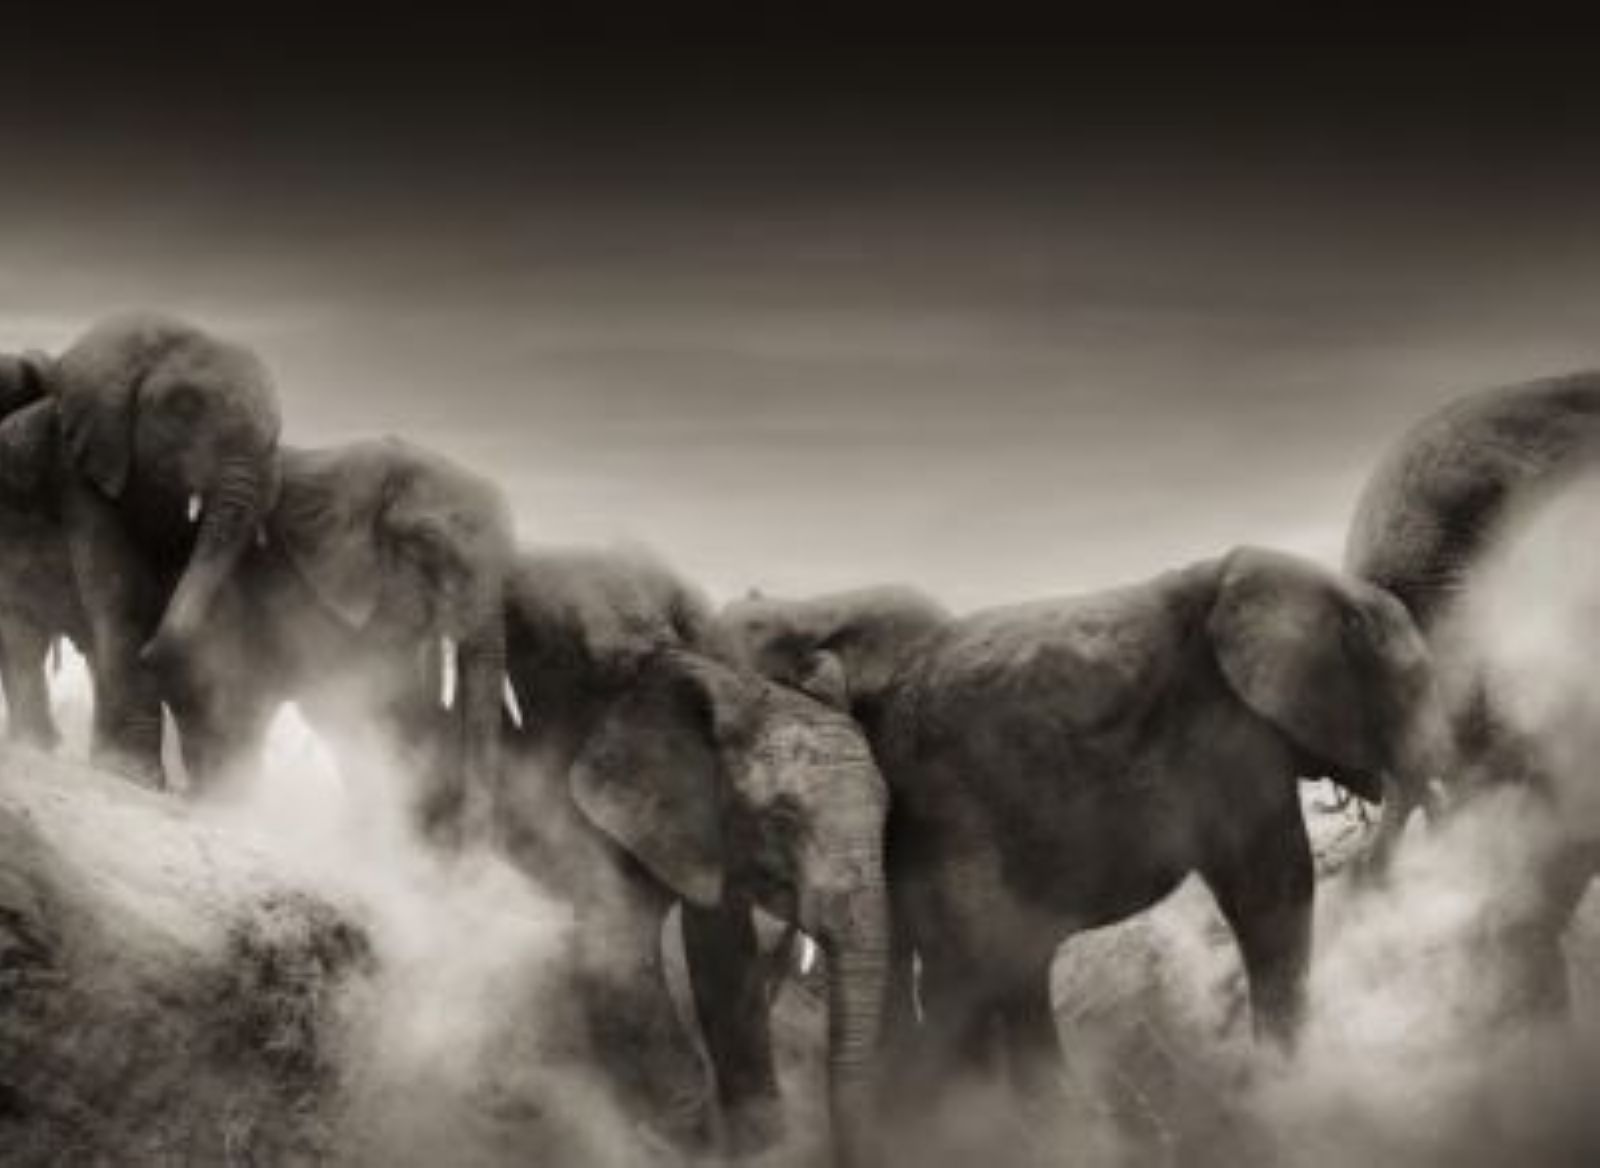 Dust II by Joachim Schmeisser, herd of elephants in the dust